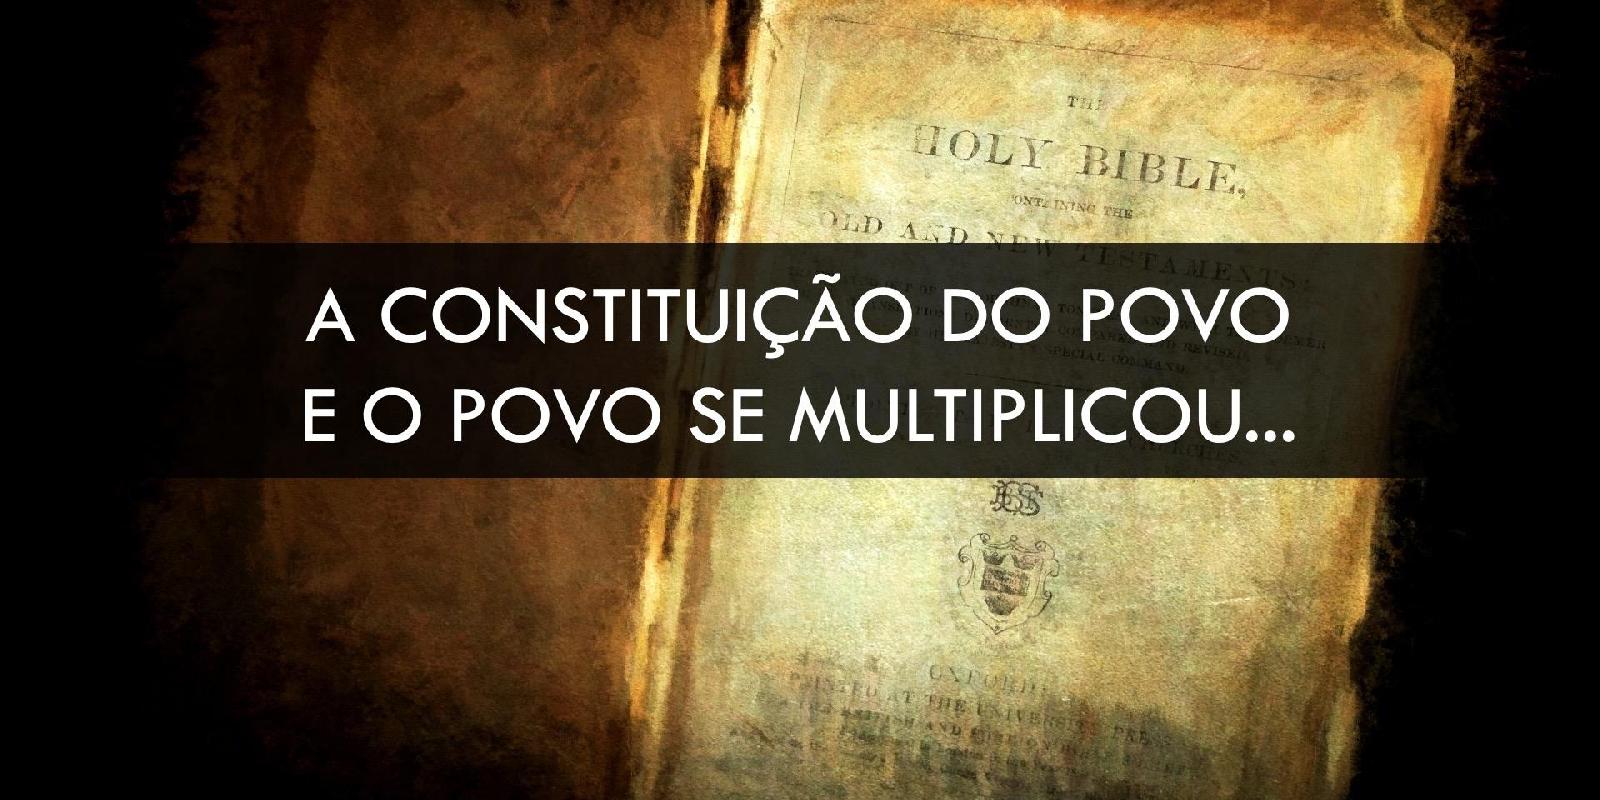 Constituição do Povo - “E o povo se multiplicou...”